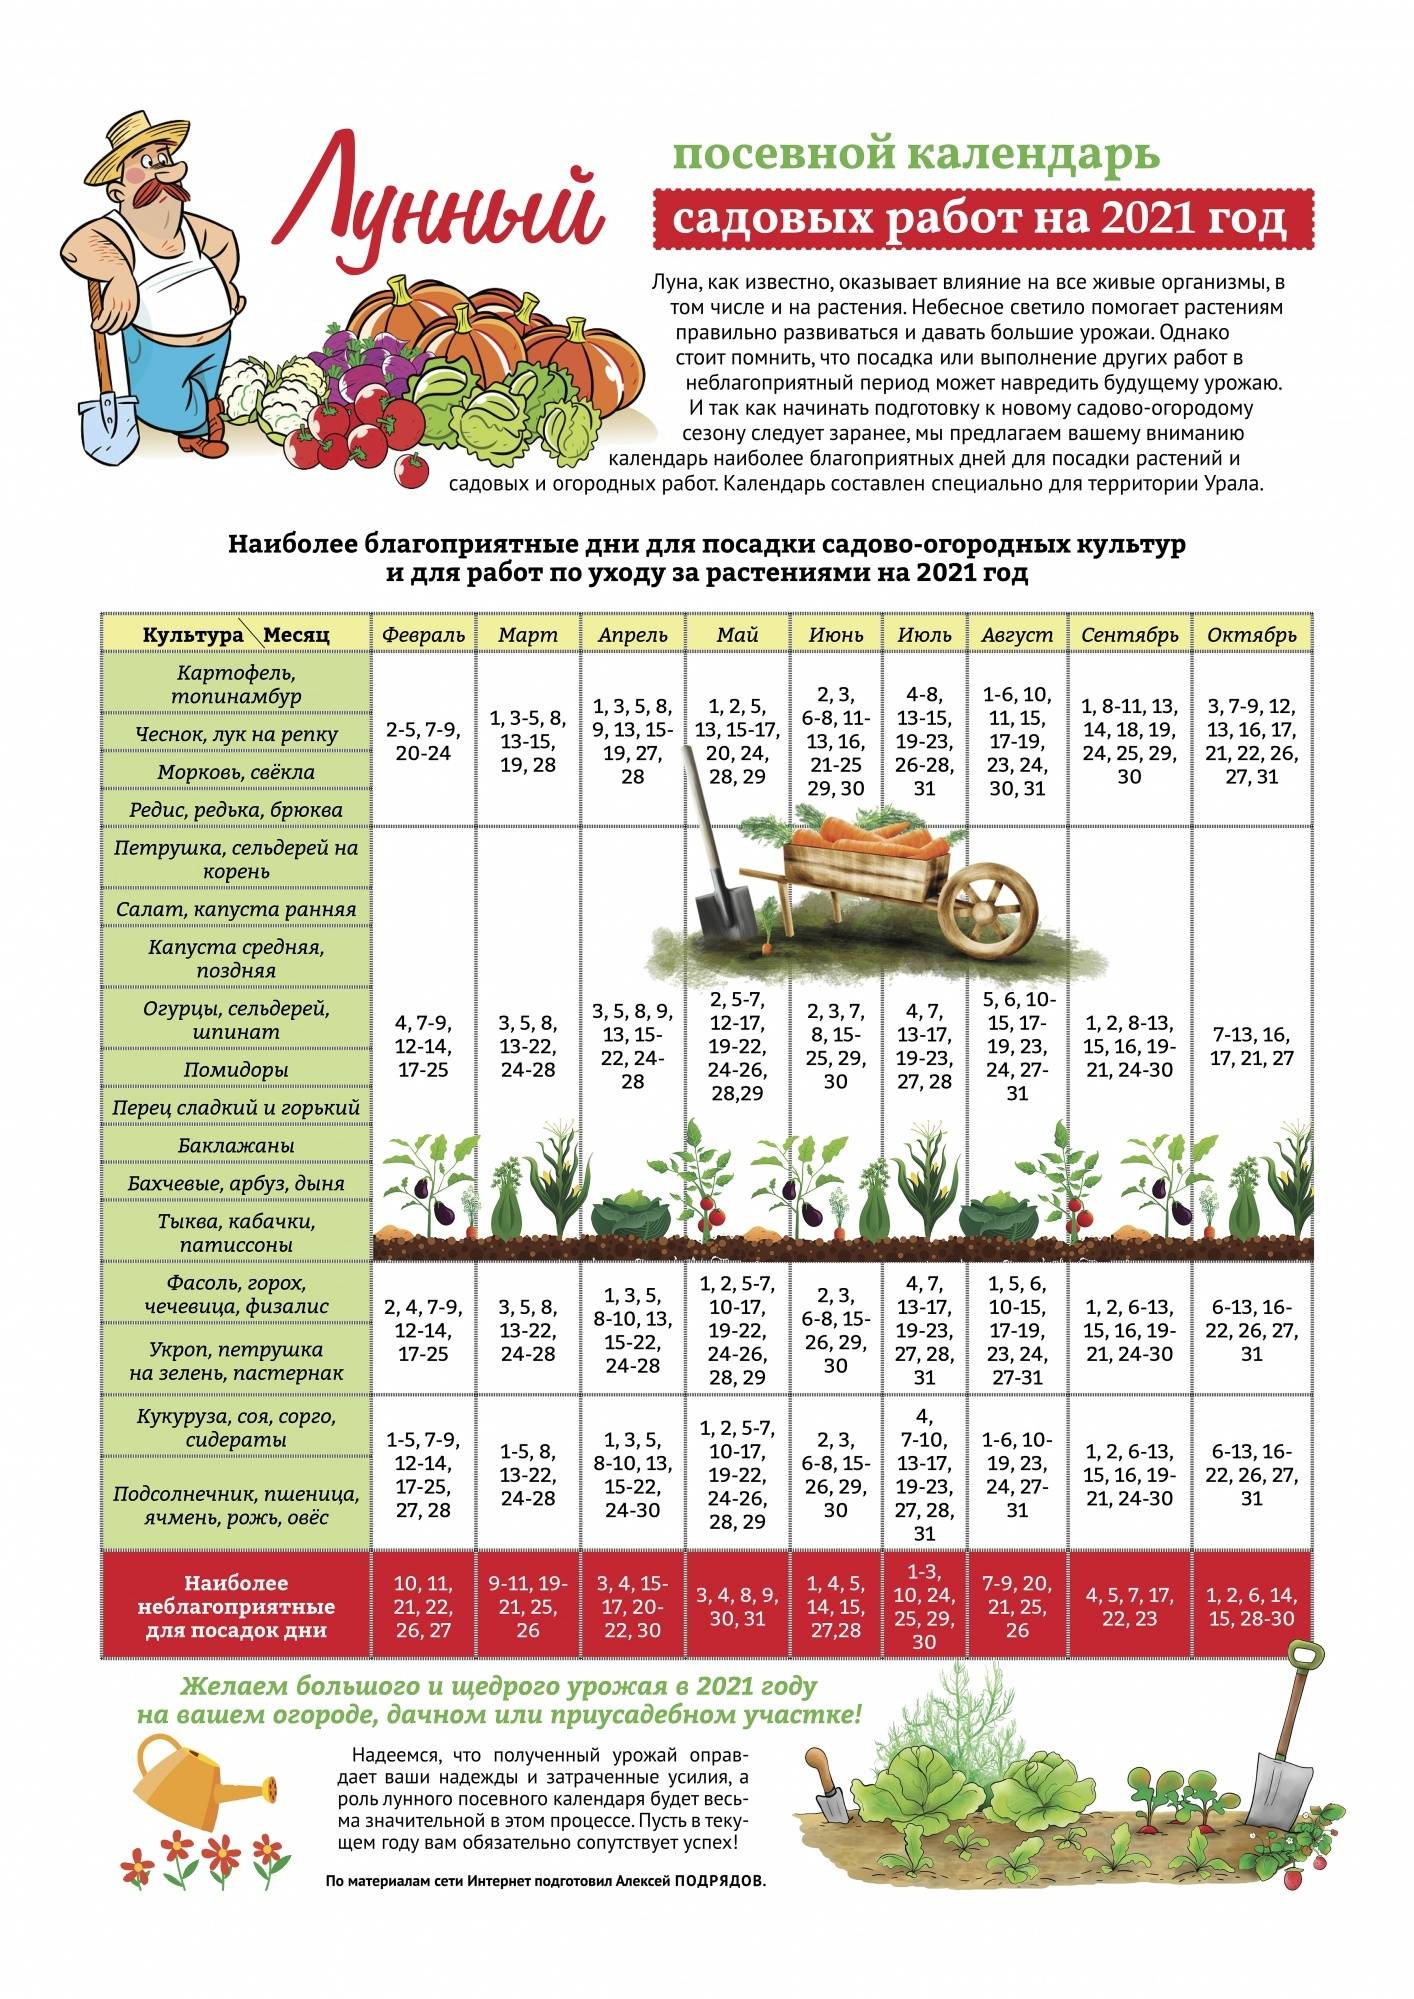 Календарь огородника садовода июнь 2021: благоприятные посадочные дни в июне 2021 года